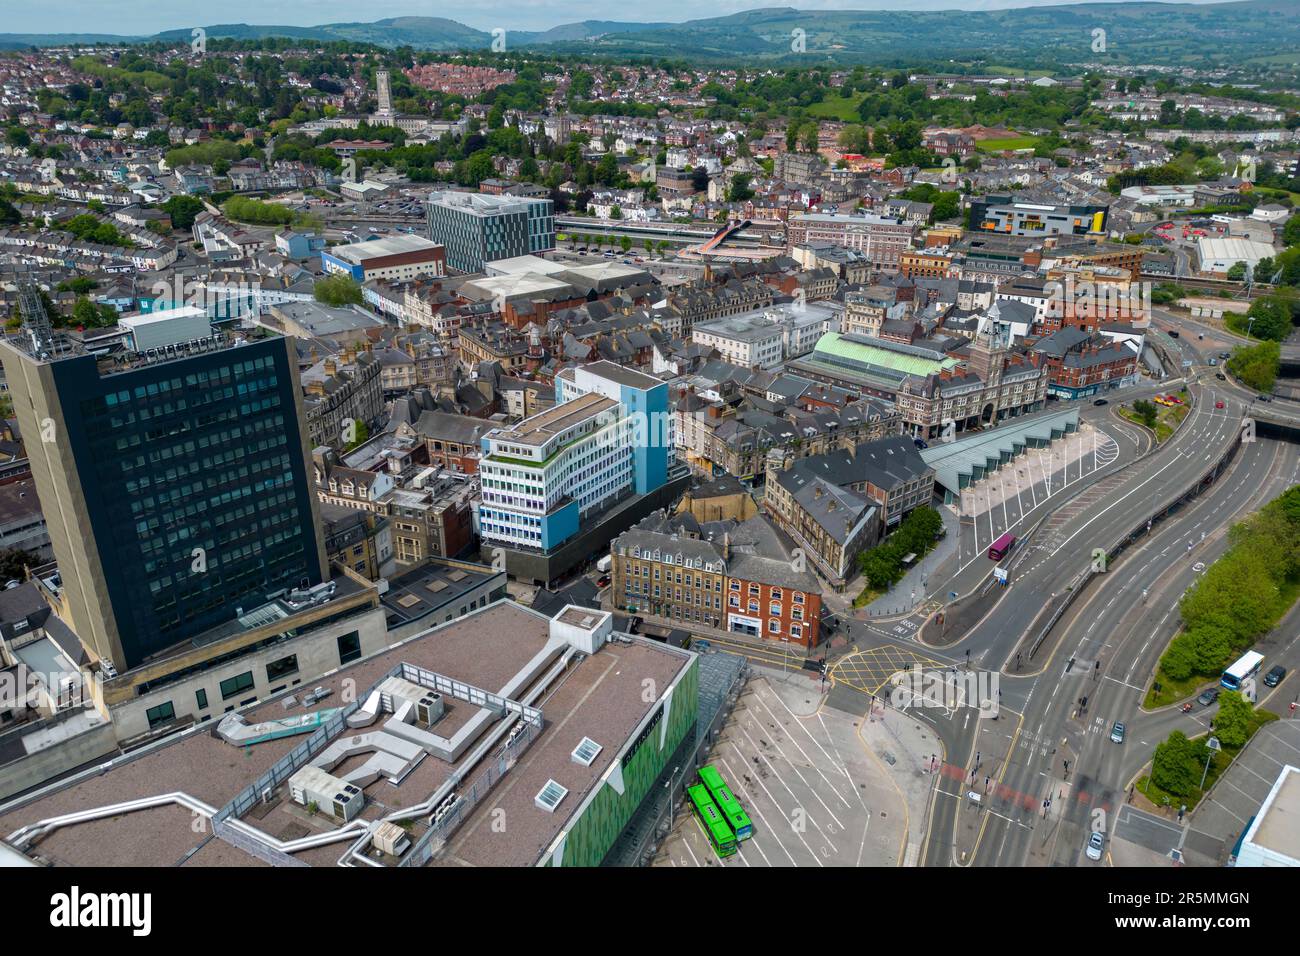 Vue aérienne de Newport, pays de Galles du Sud, avec marché de Newport, centre-ville et gare routière. Banque D'Images